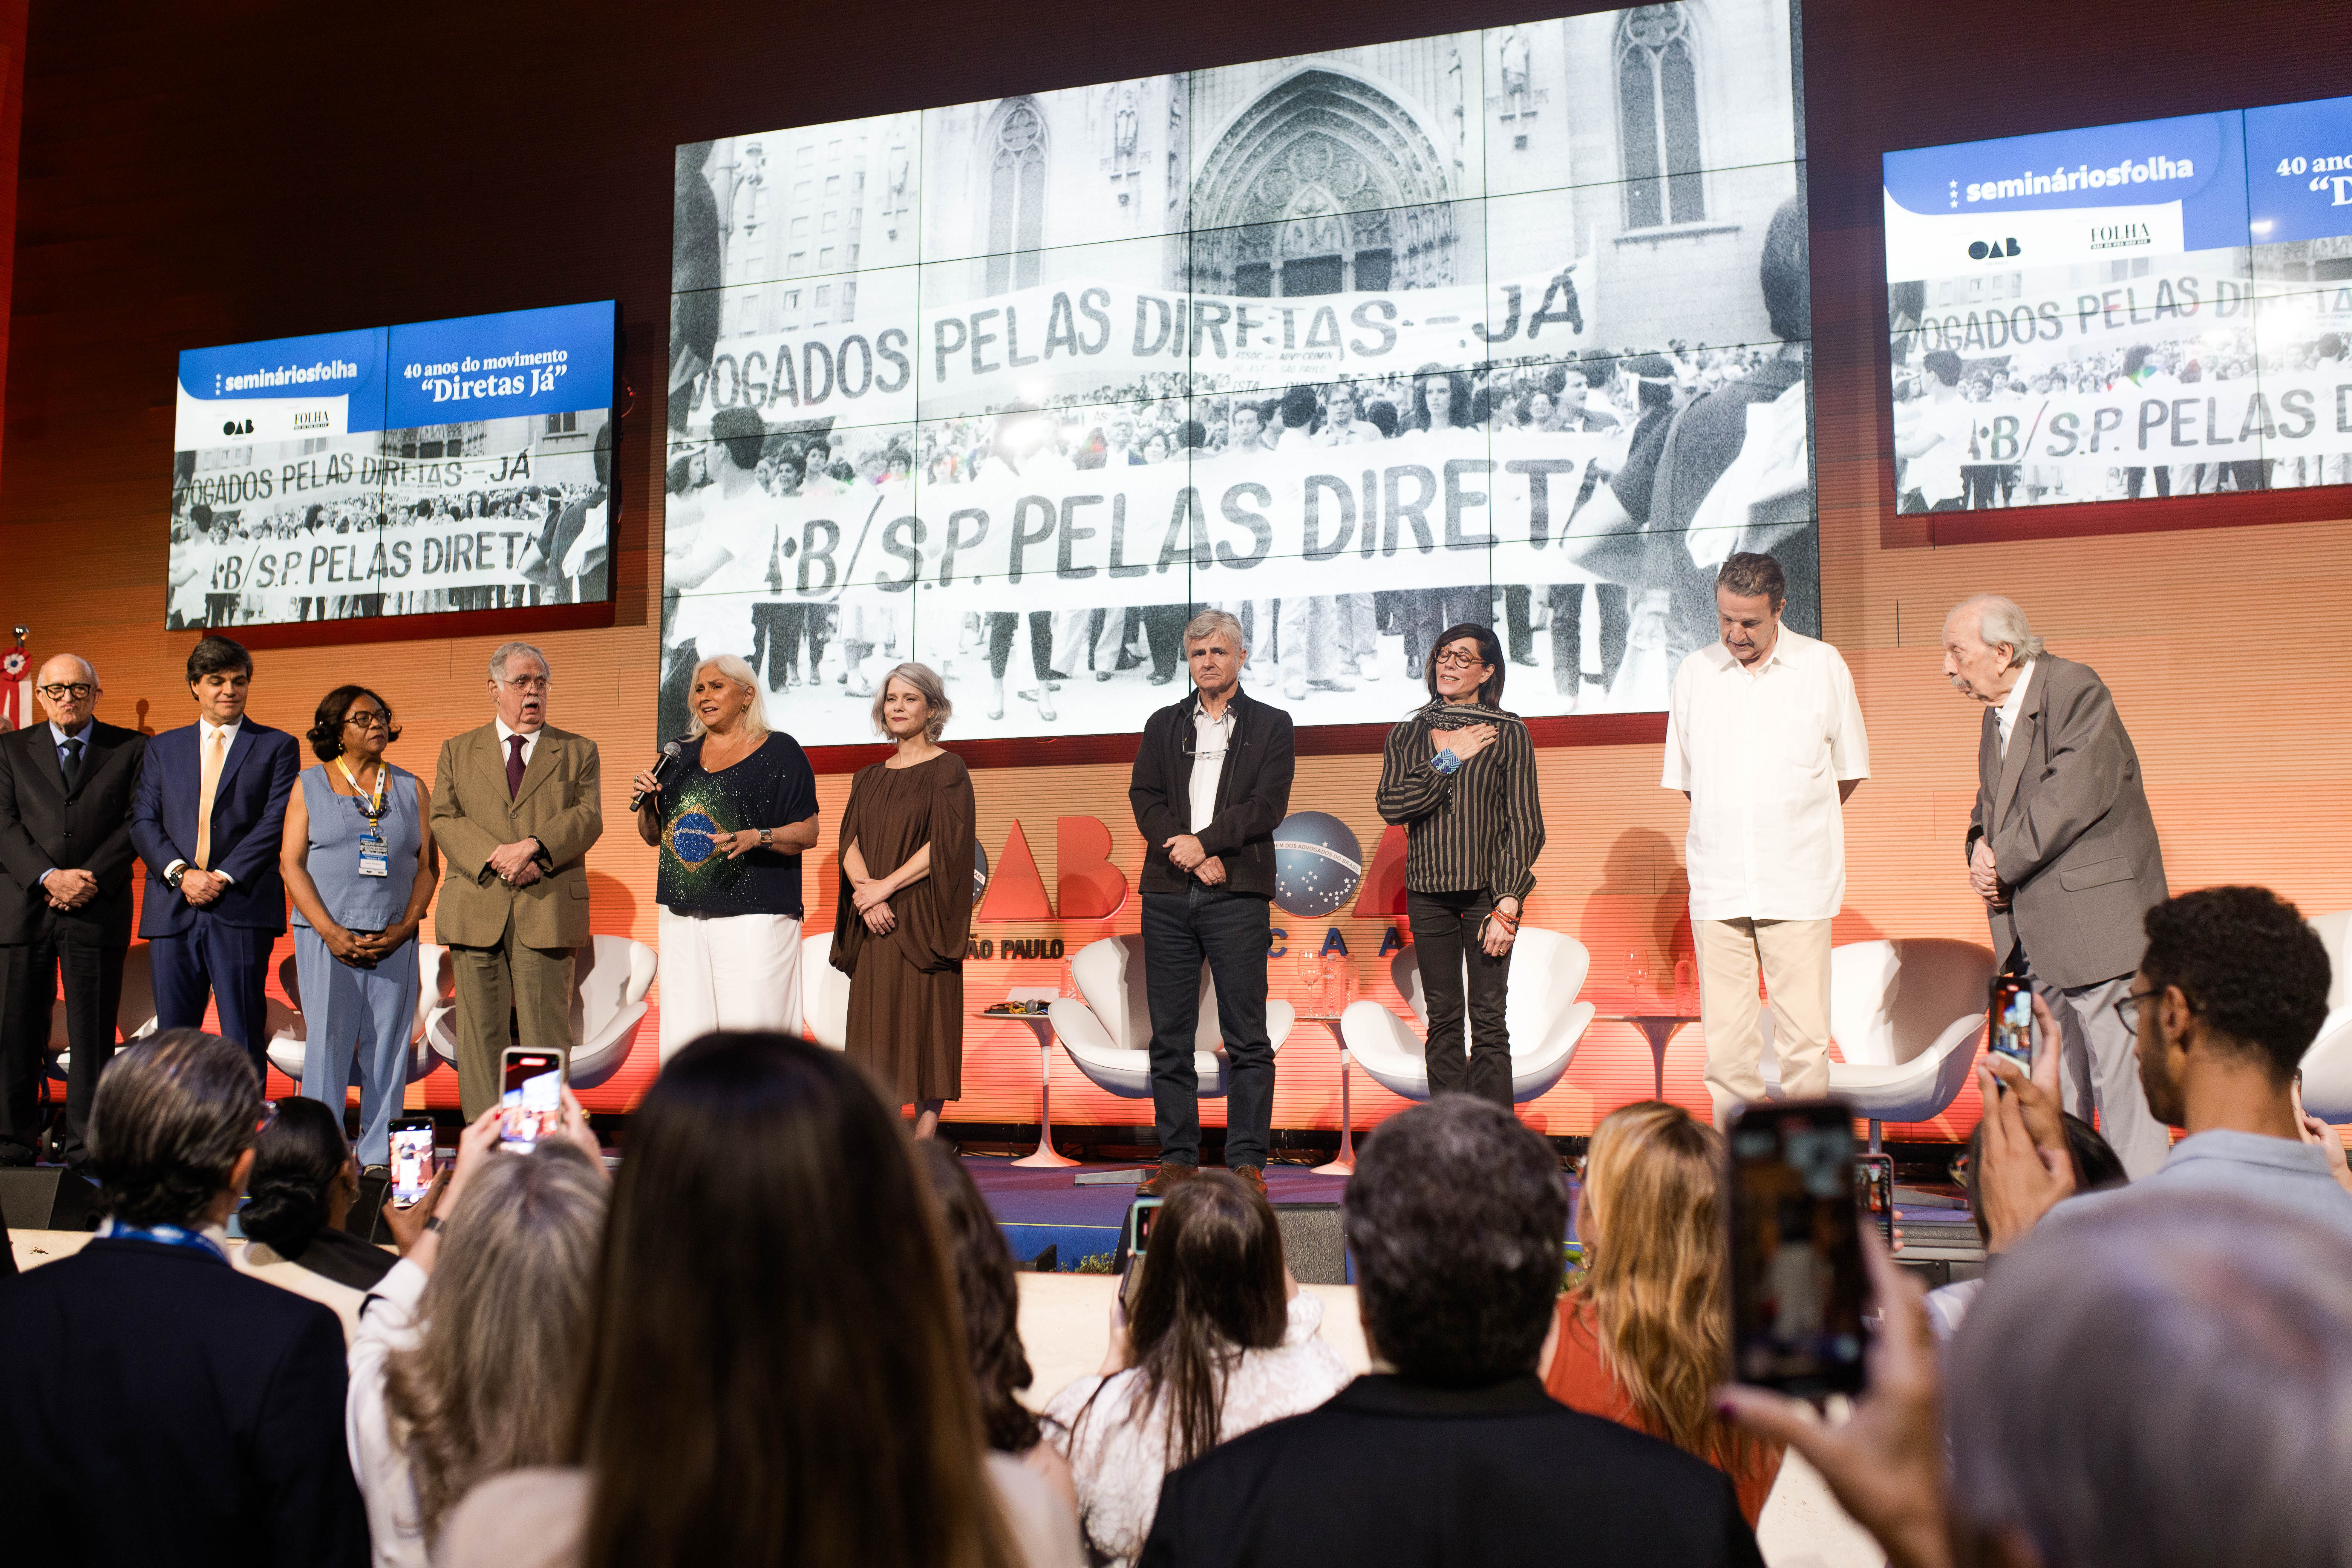 40 anos das Diretas: hino com Fafá de Belém e relatos de personalidades emocionam público na OAB SP